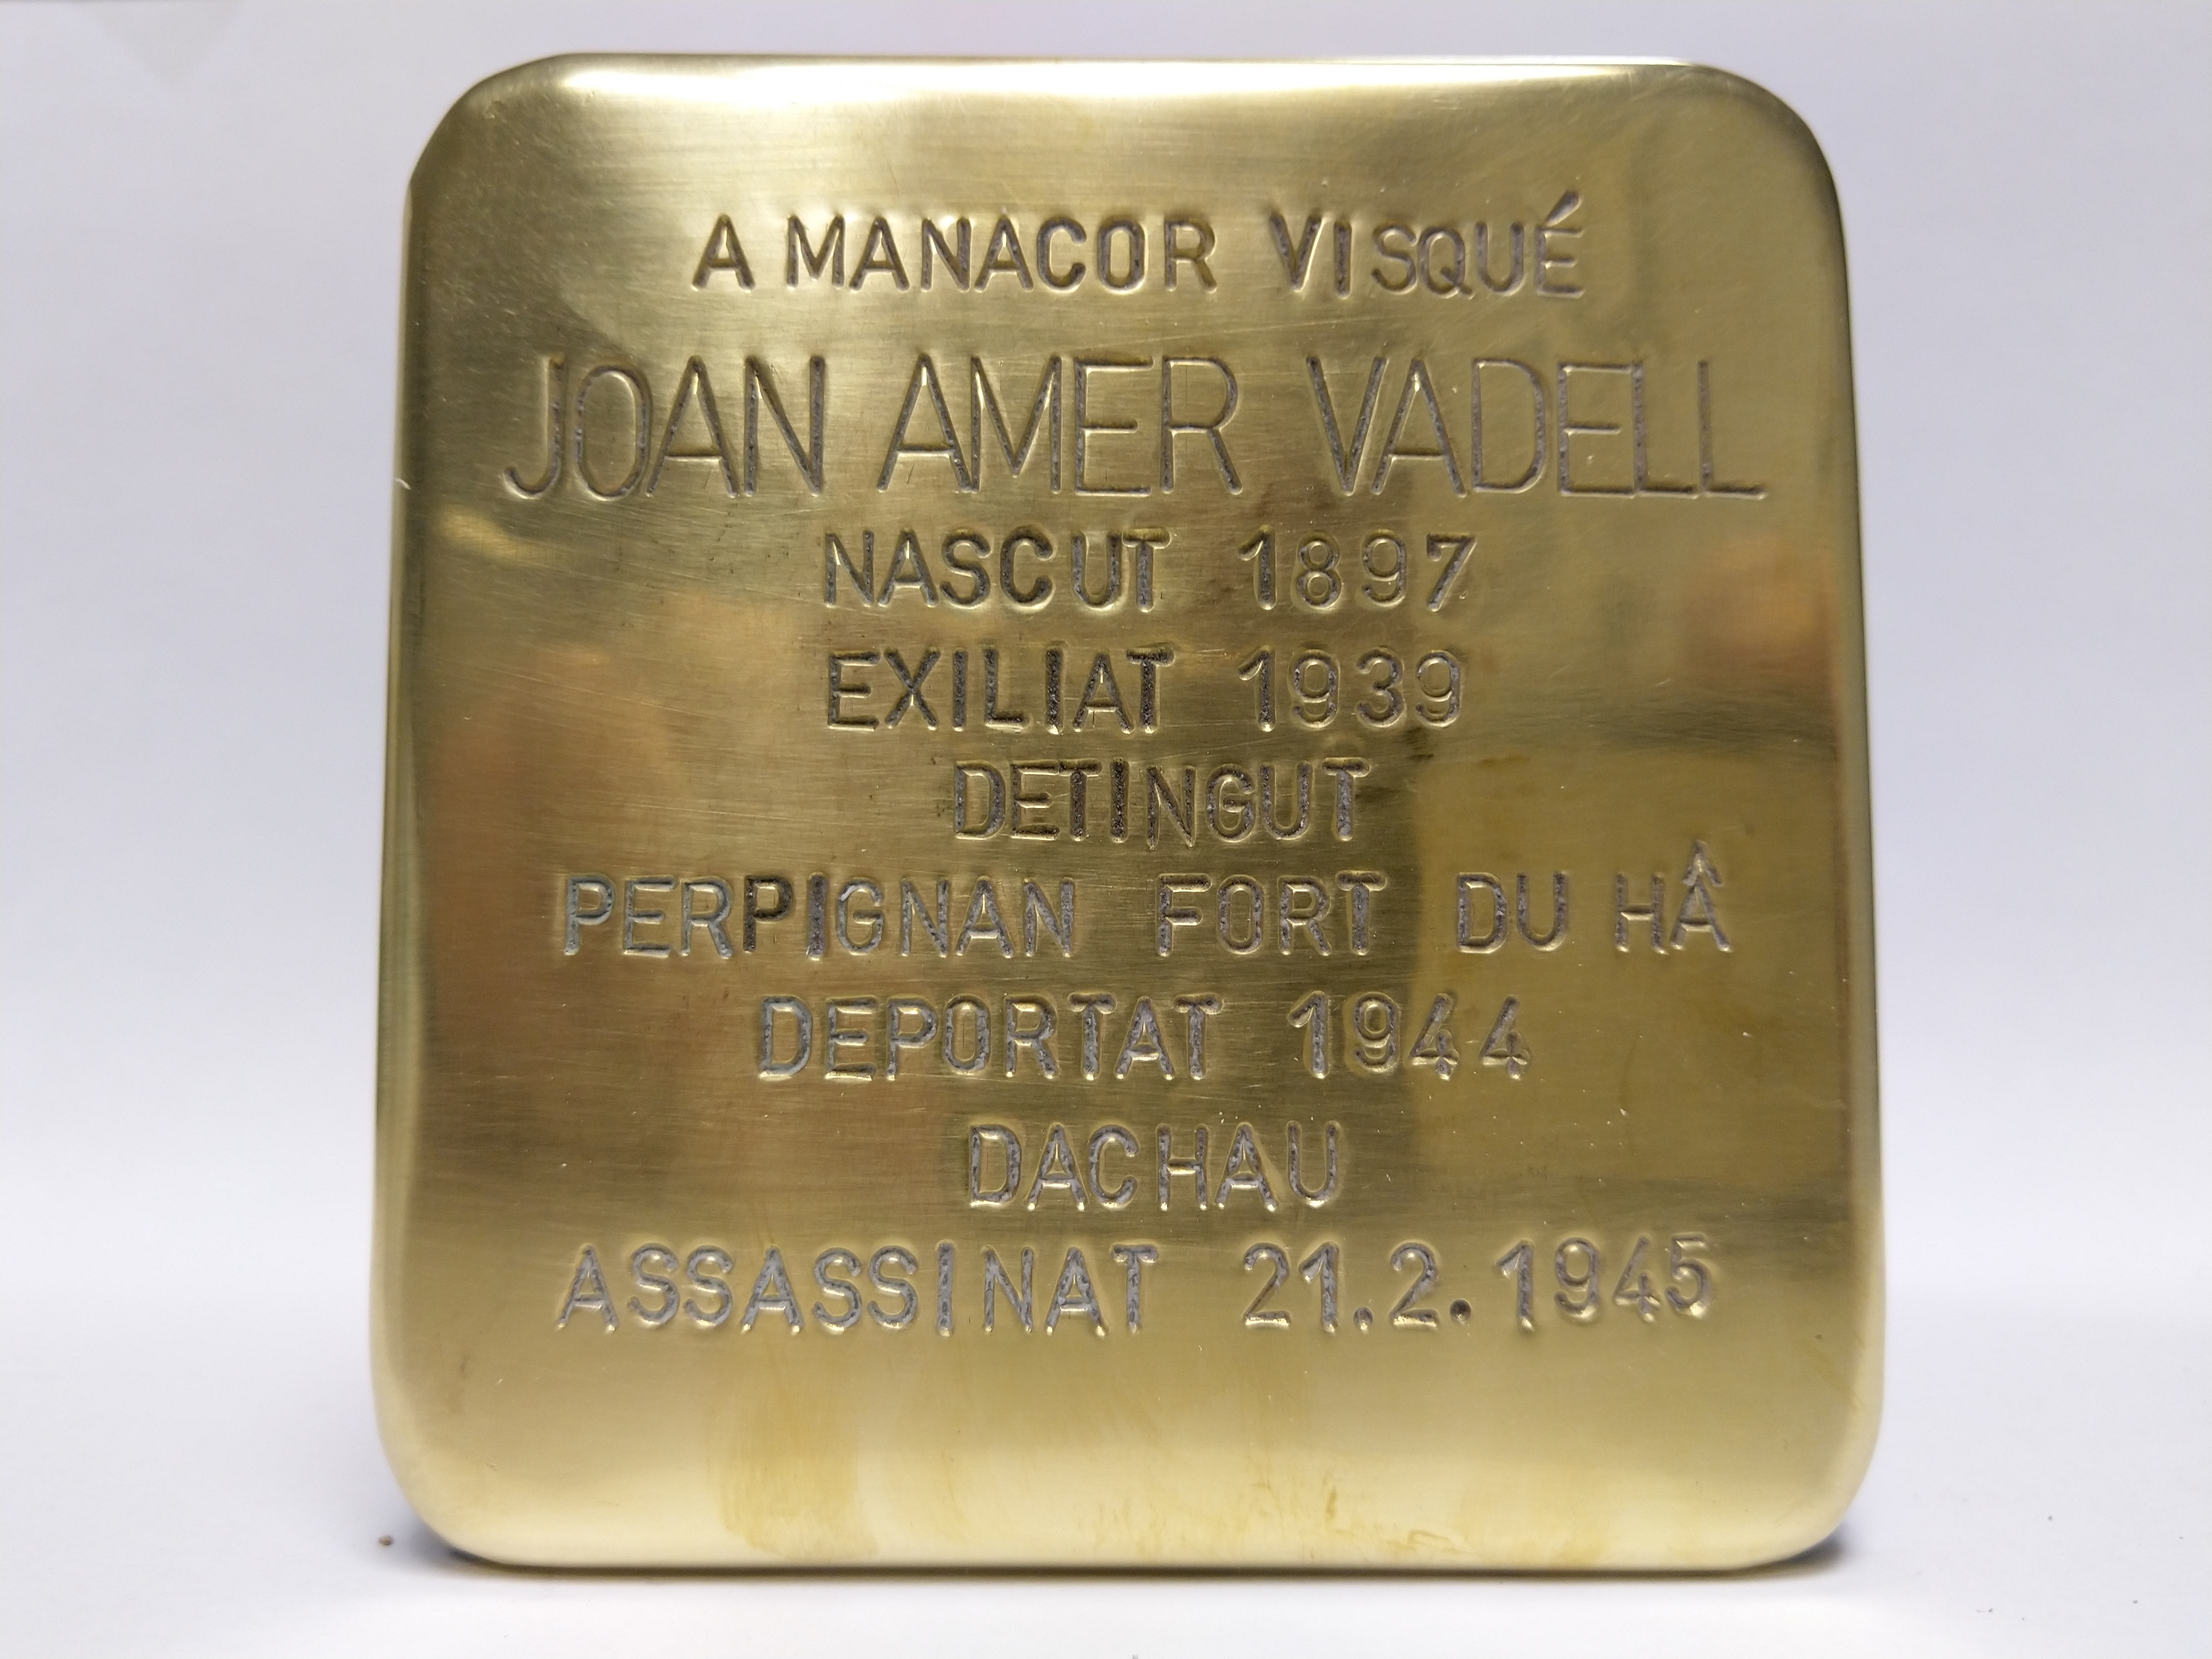 Amer Vadell, Joan